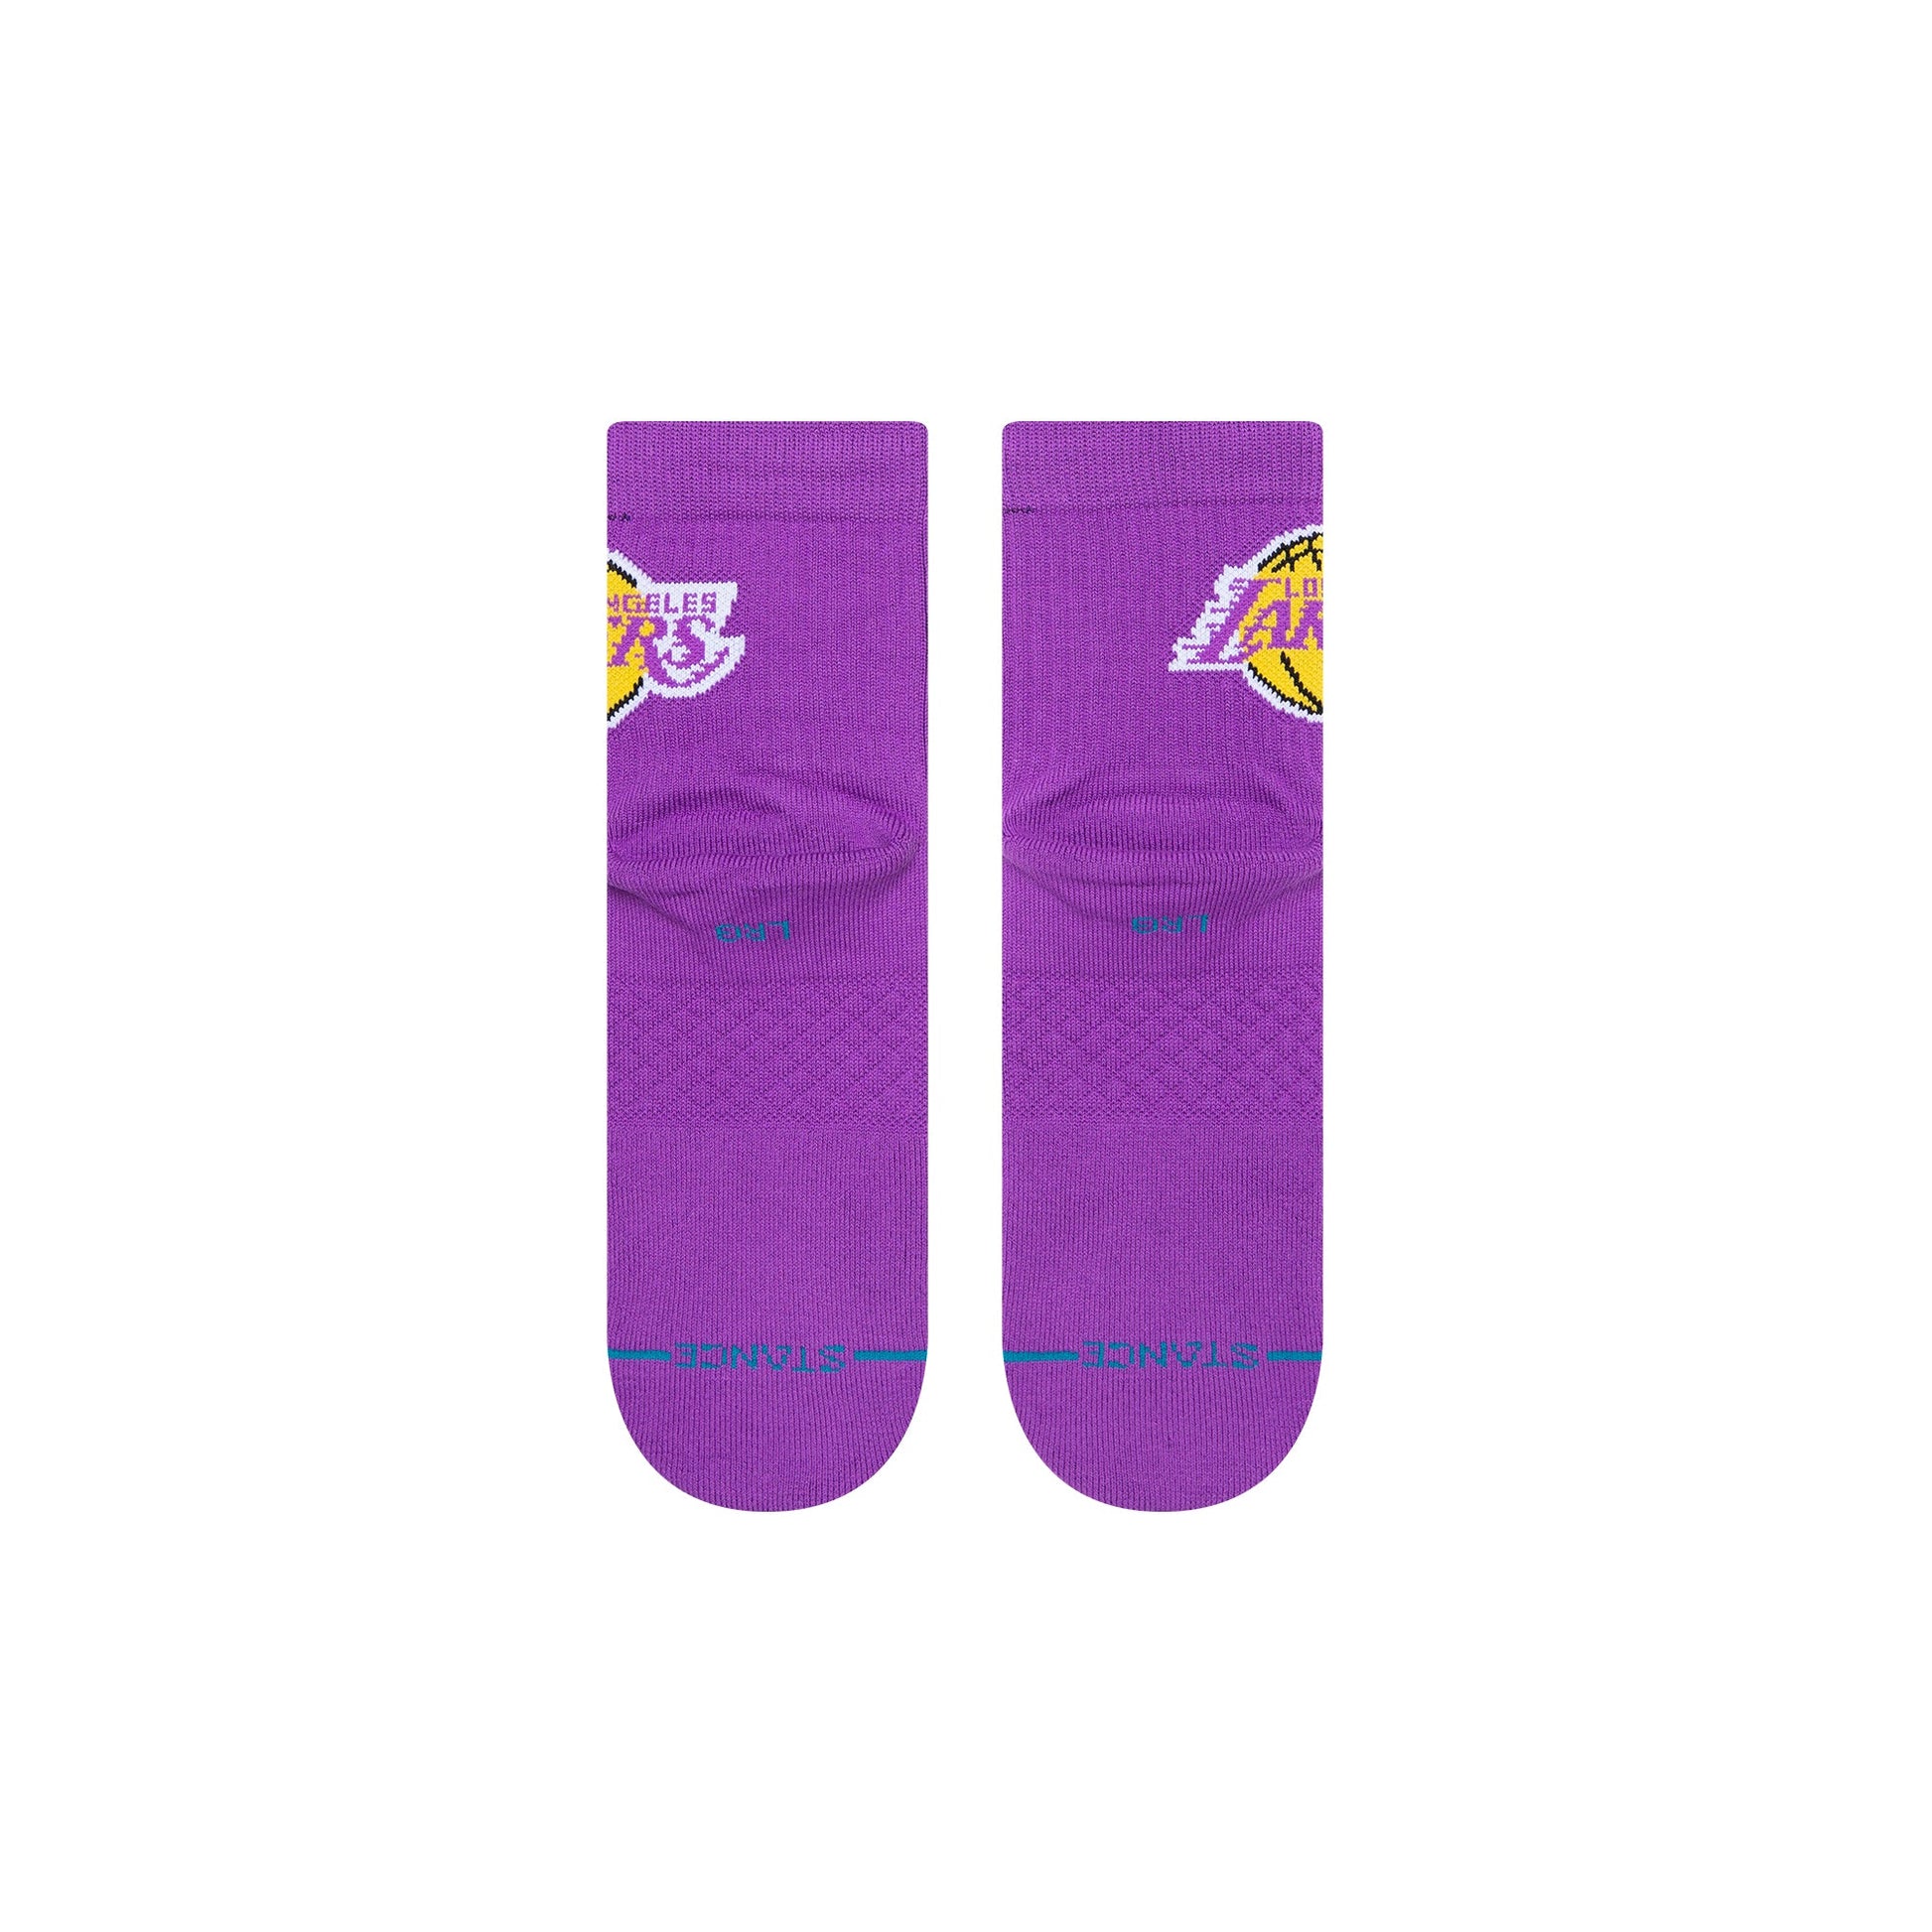 Chaussettes basses violettes Lakers de Stance